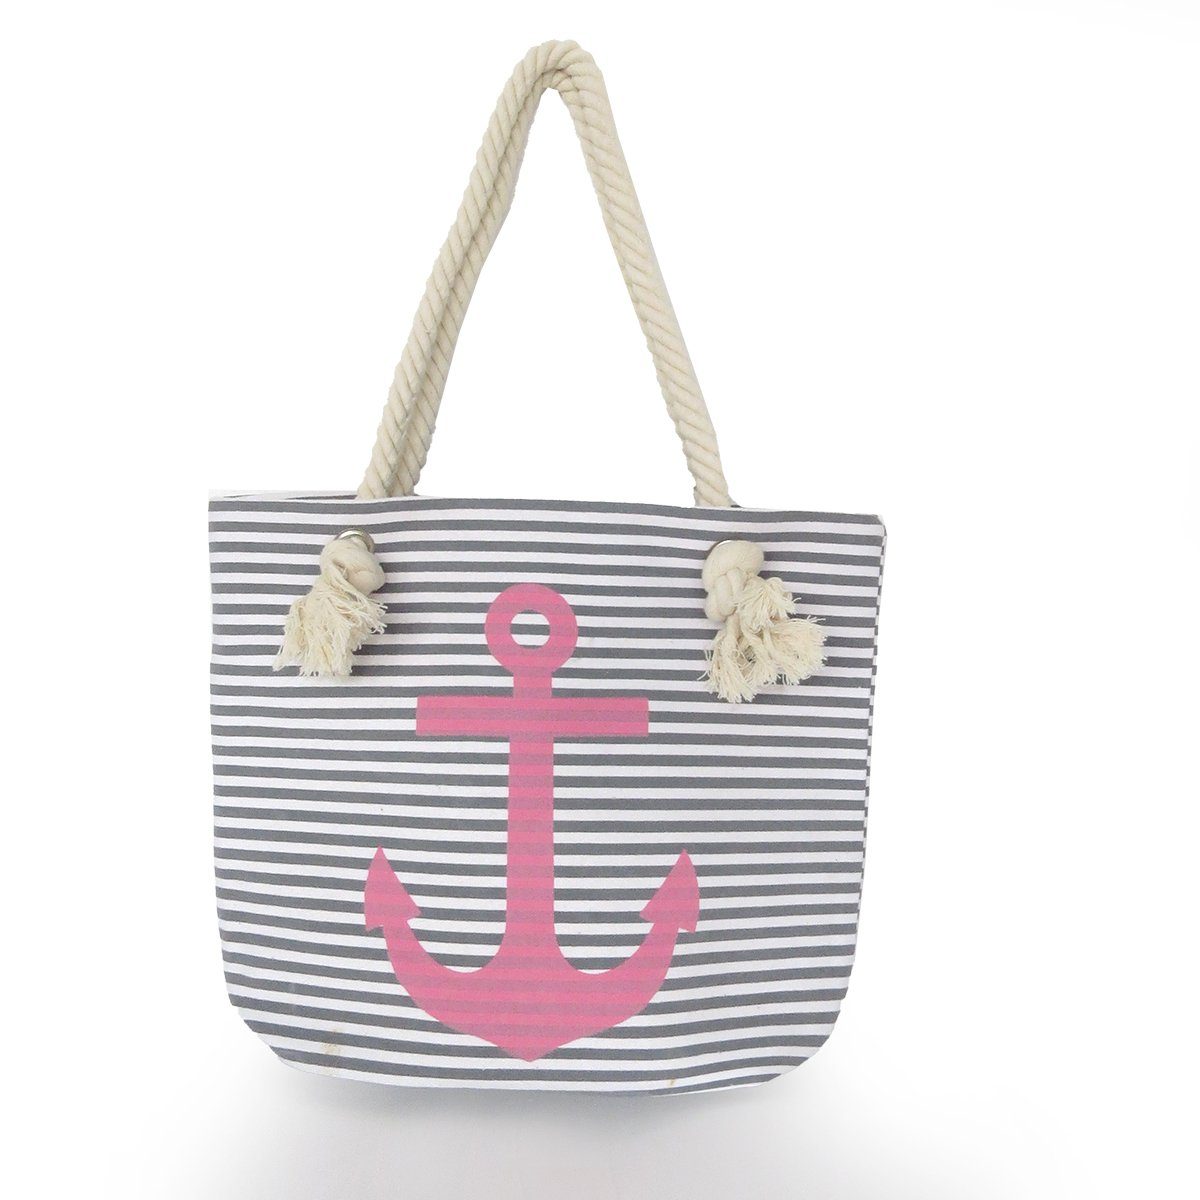 Sonia Originelli Umhängetasche Strandtasche mit Ankermotiv Beachbag Shopper Streifen Maritim grau-rosa